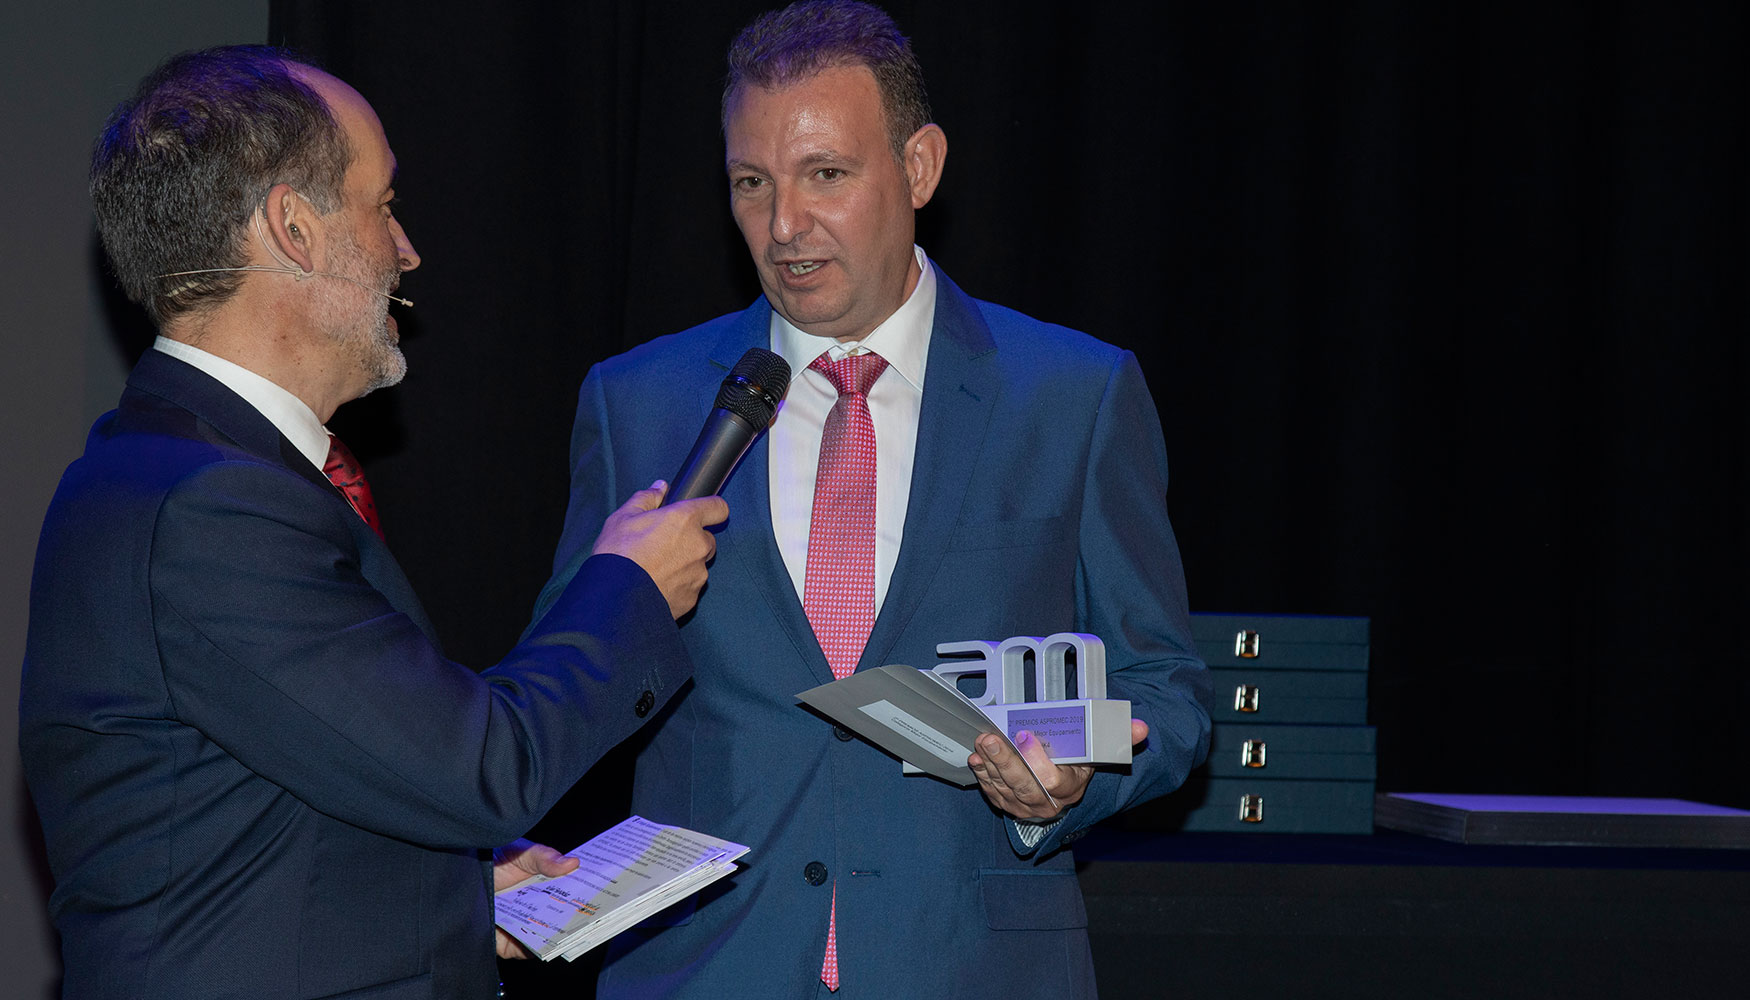 Hizo entrega de del premio al Mejor Equipamiento Rafael Fernndez, vocal de Aspromec y director comercial de Rhm Iberica...